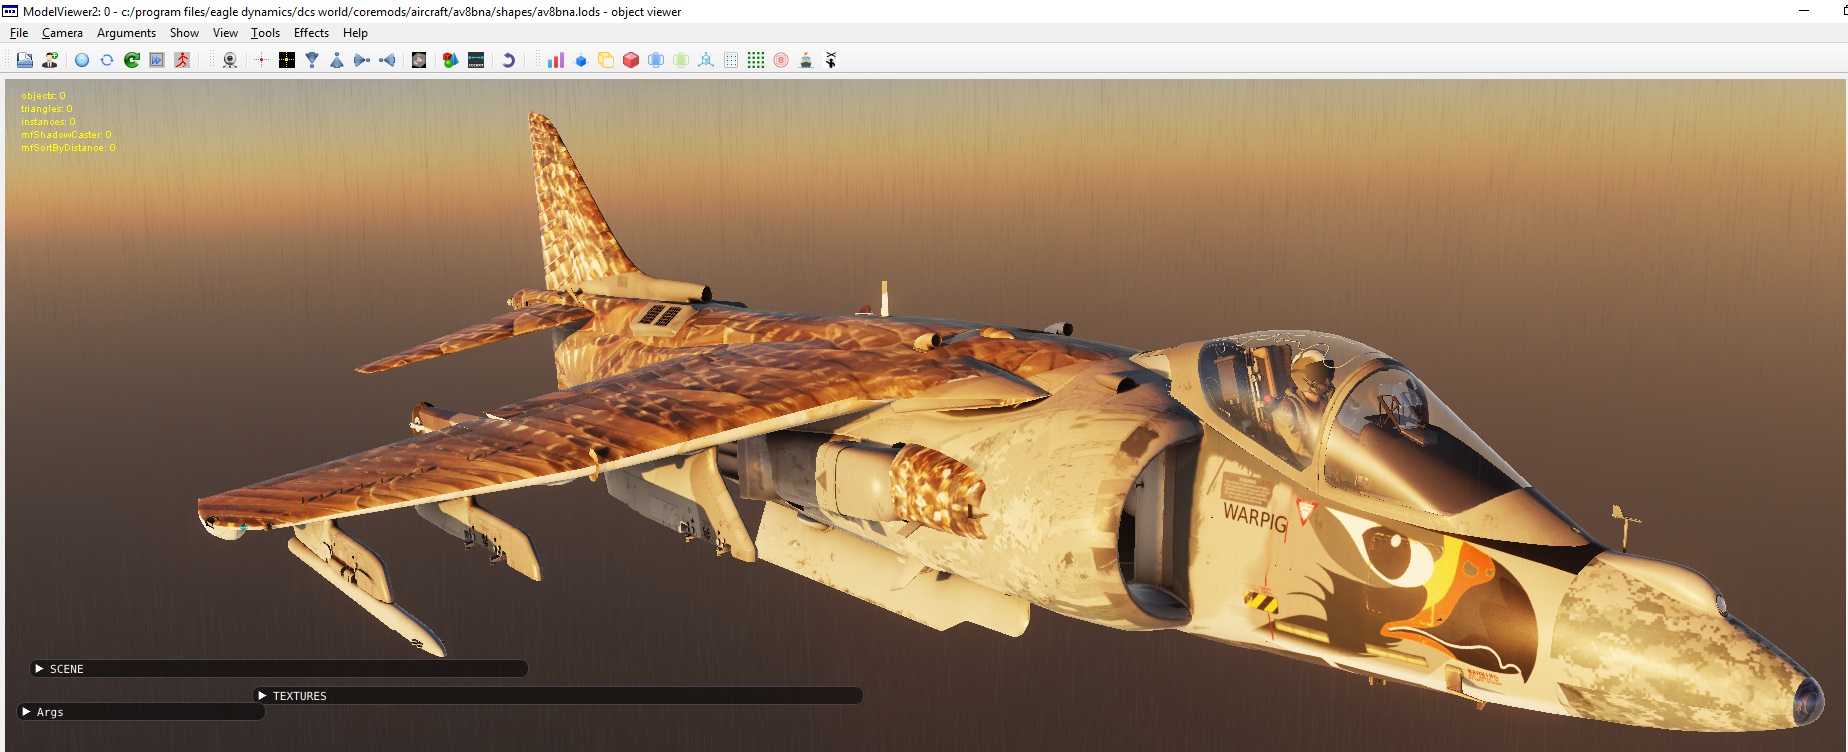 AV-8B NA Kahu (swamp falcon) Skin